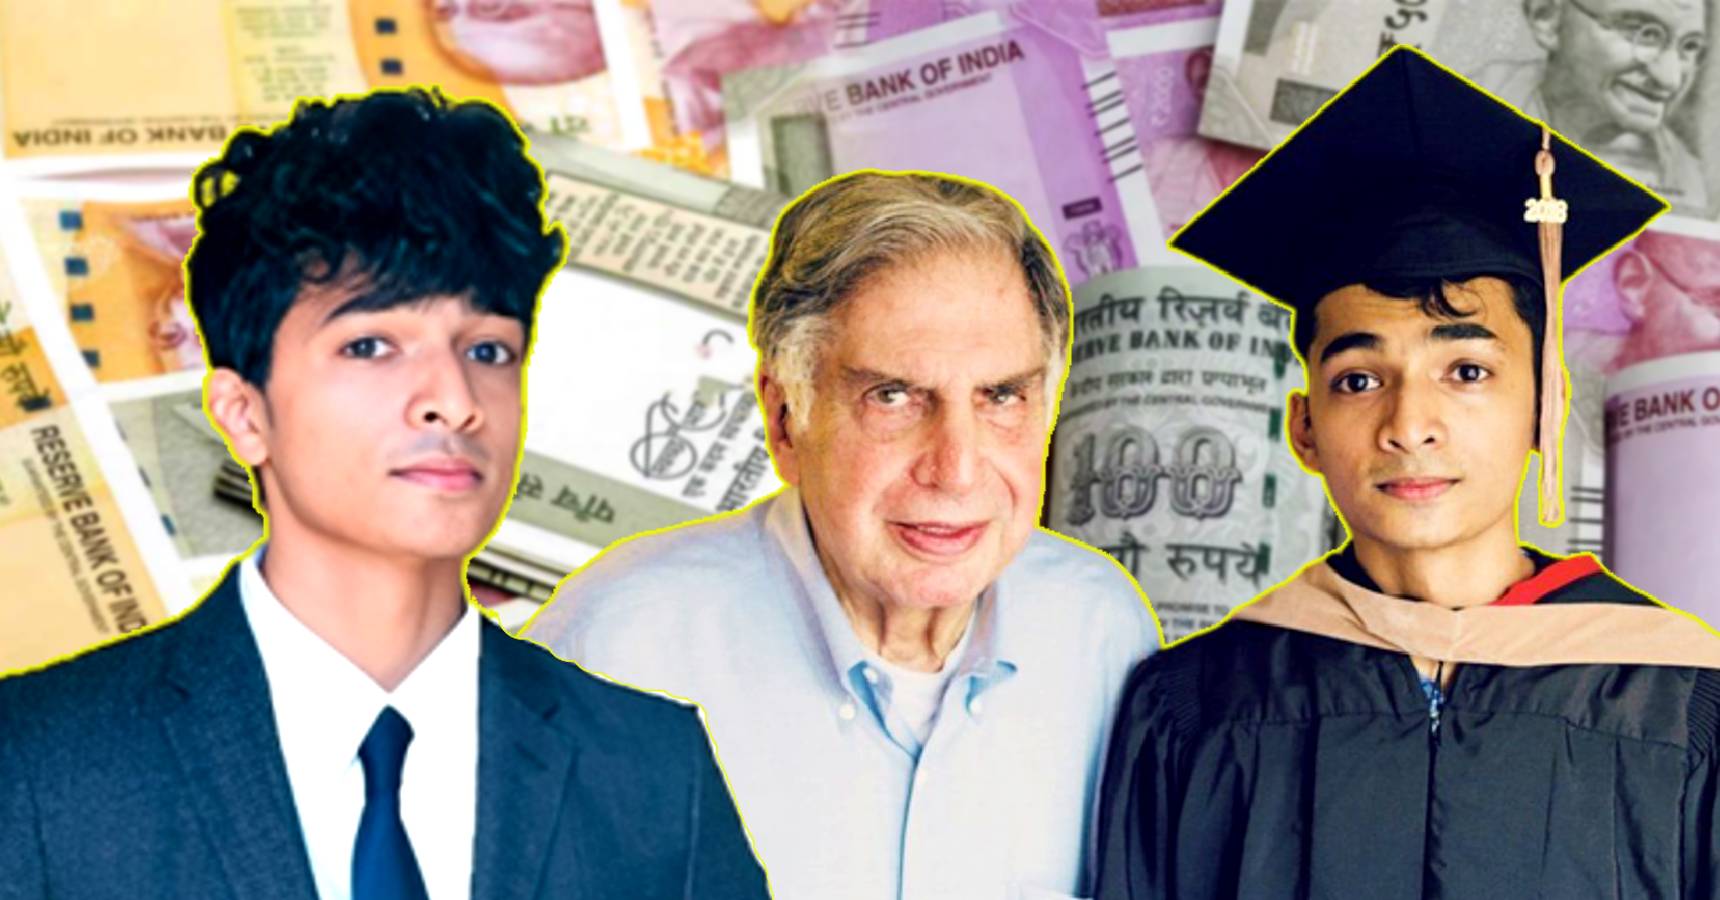 Ratan Tata manager Shantanu Naidu’s salary net worth and wealth details